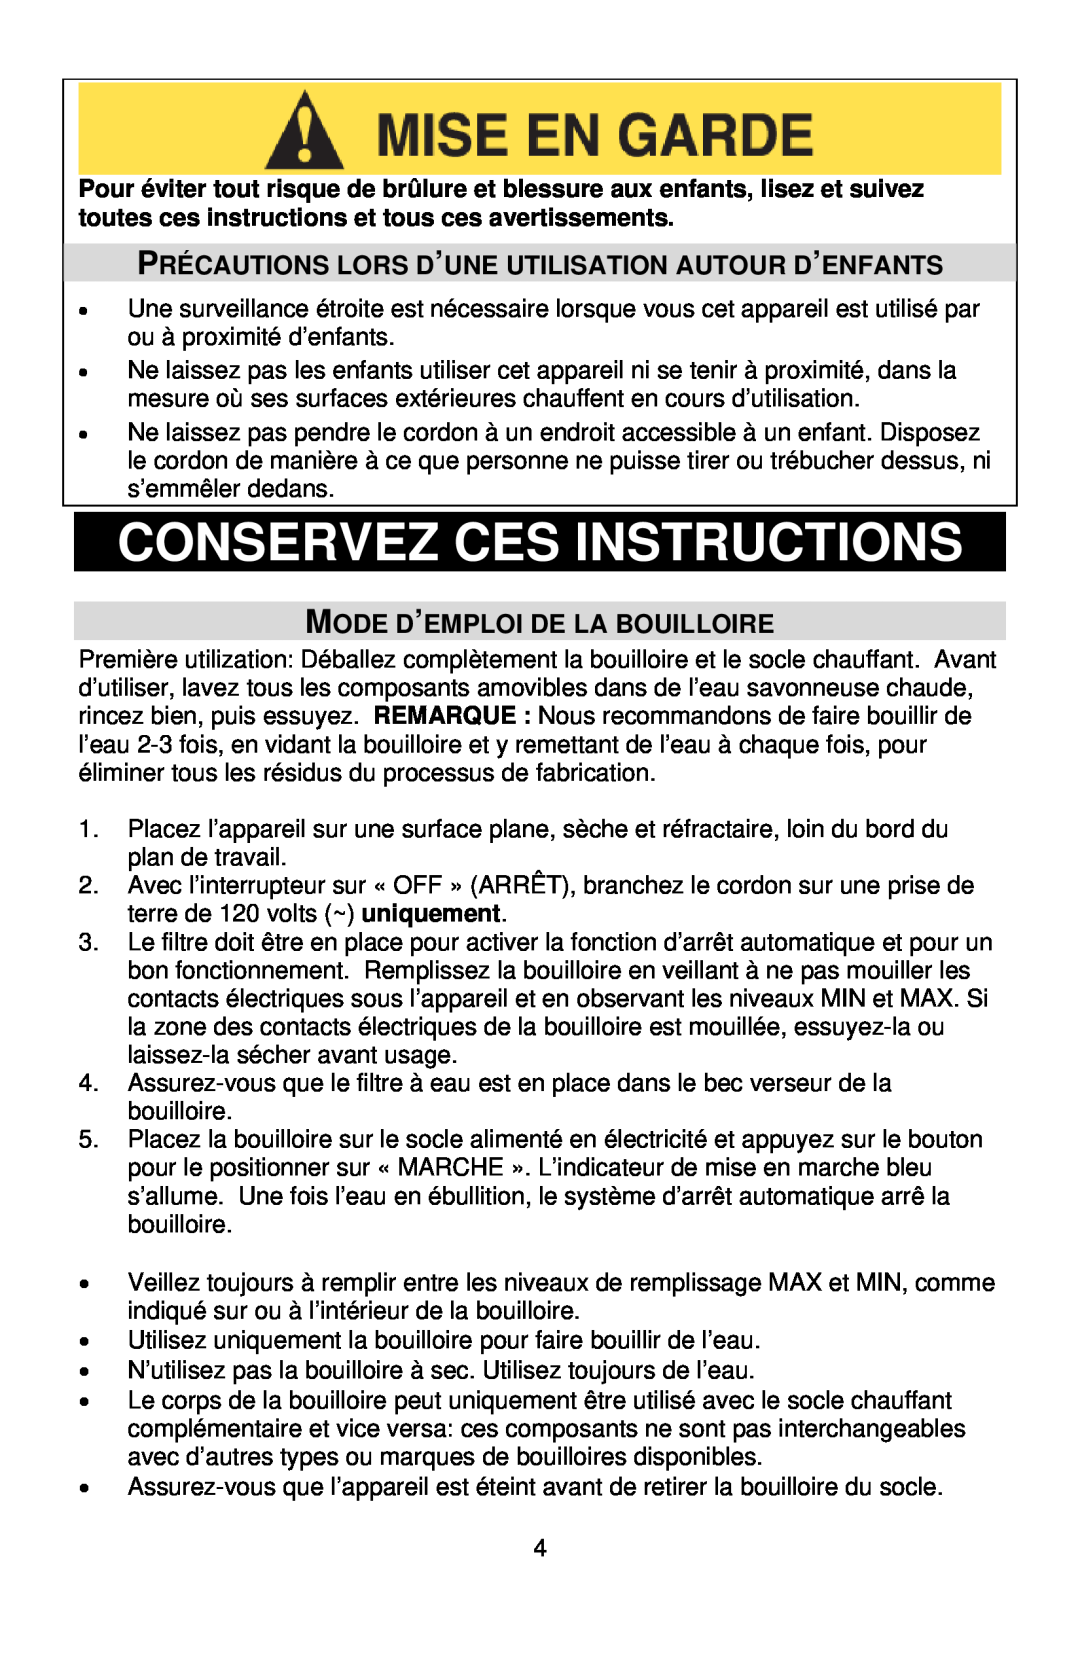 West Bend Kettle instruction manual Conservez Ces Instructions, Mode D’Emploi De La Bouilloire 